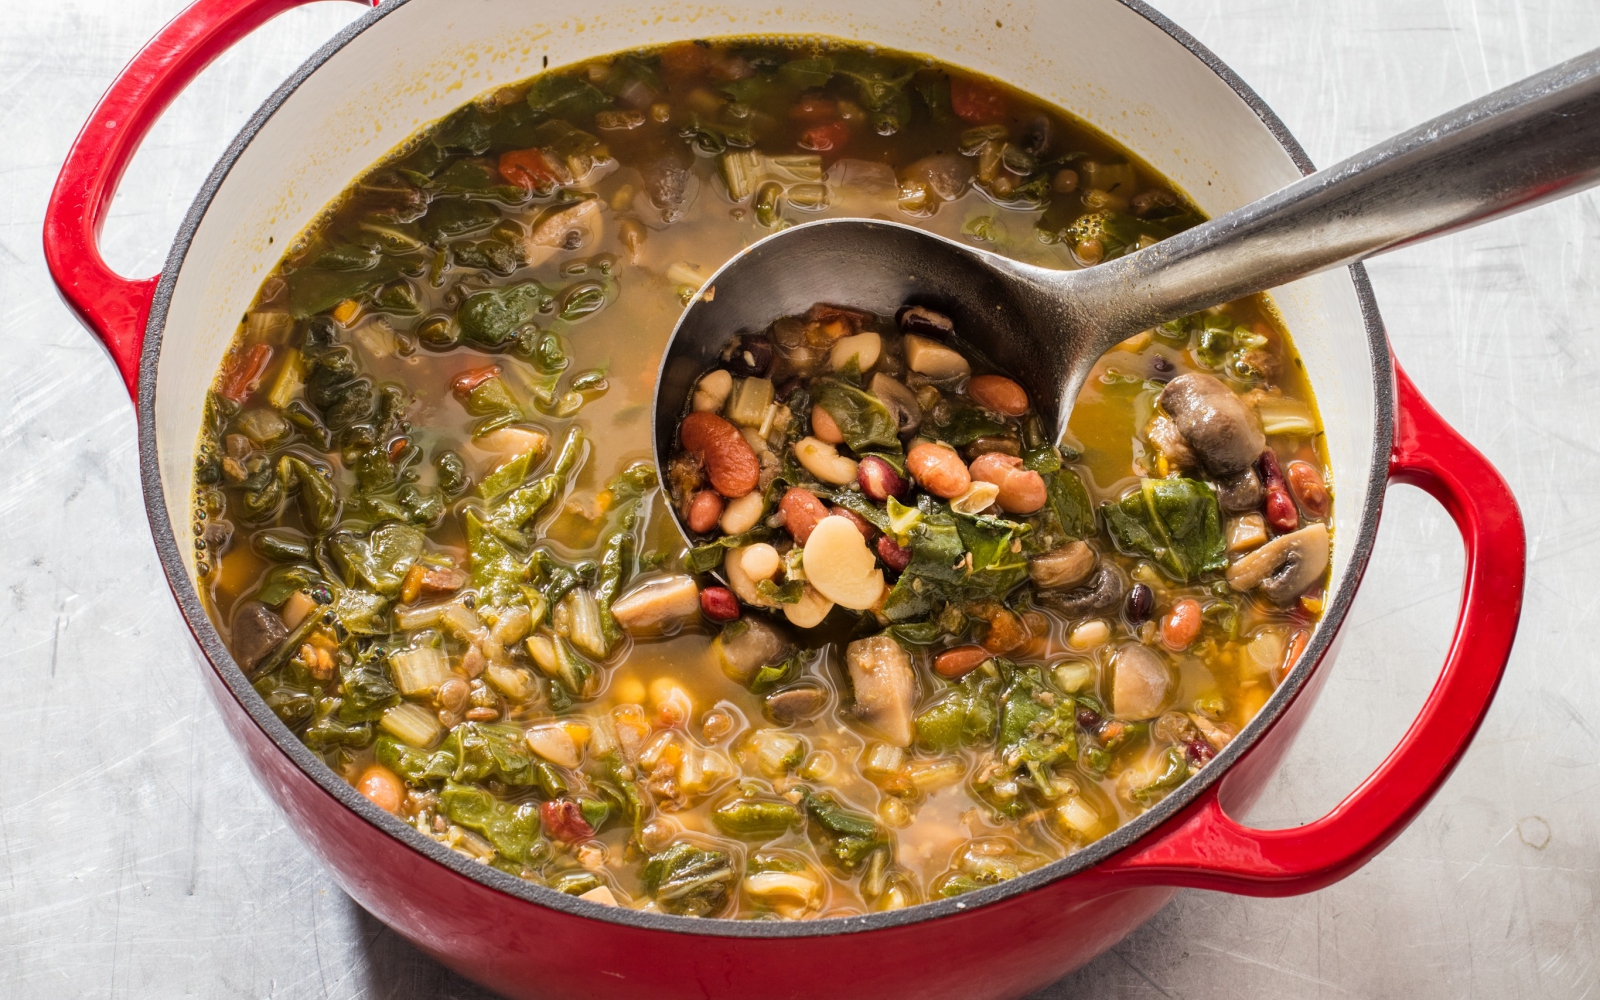 Soti 15 pupelių ir daržovių sriuba